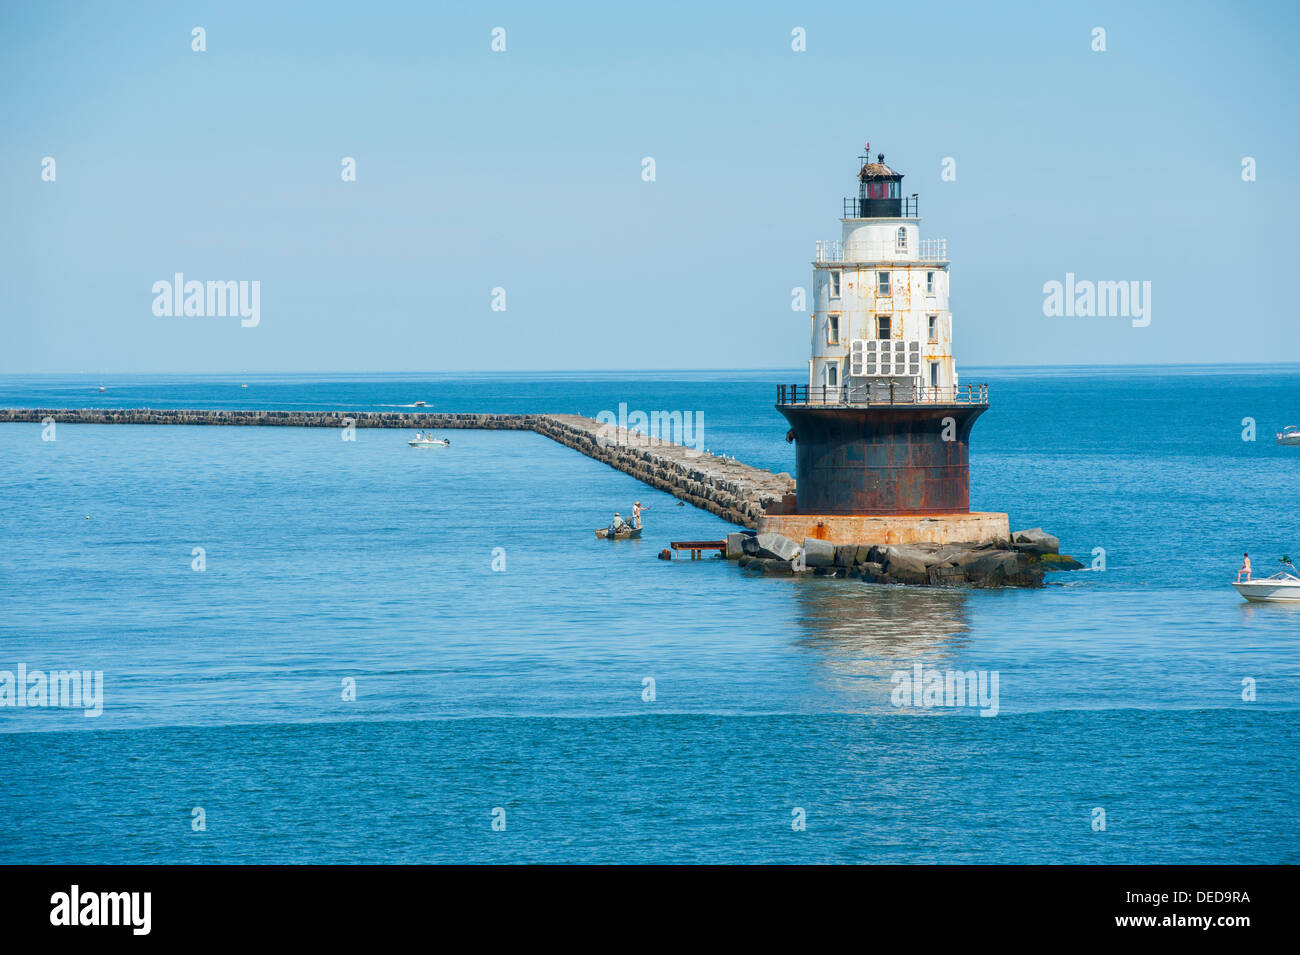 DE DELAWARE USA Port de refuge phare dans la baie du Delaware, près de Cape Henlopen équipé de panneaux solaires est assis sur un brise-lames Banque D'Images